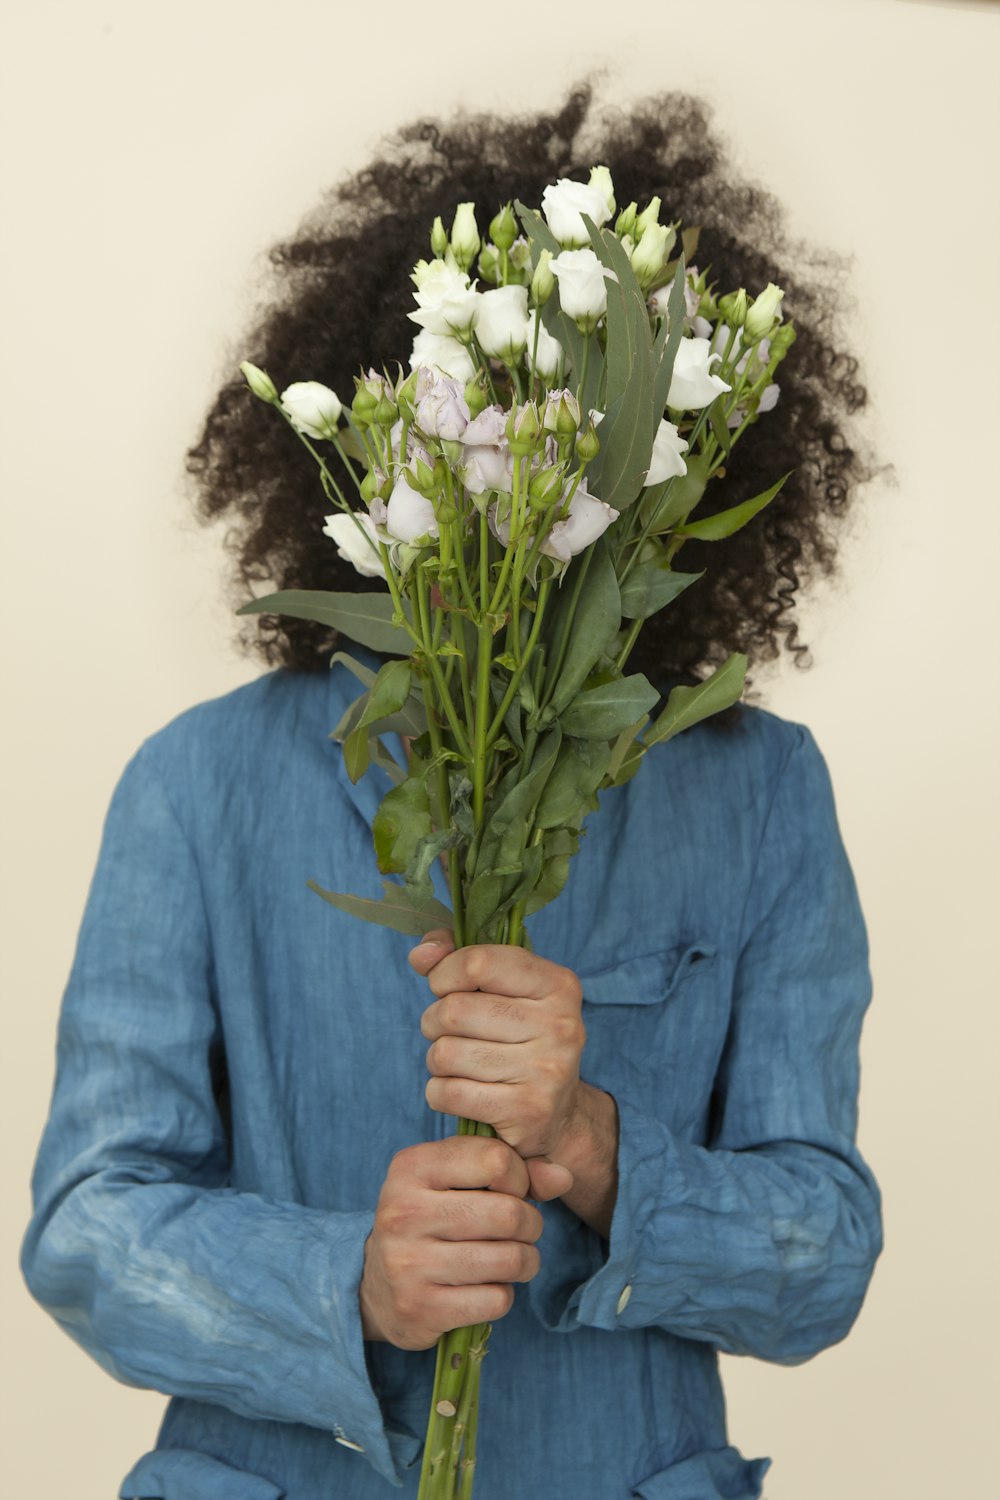 흰색 튤립 꽃다발을 들고 있는 사람의 선택적 초점 사진